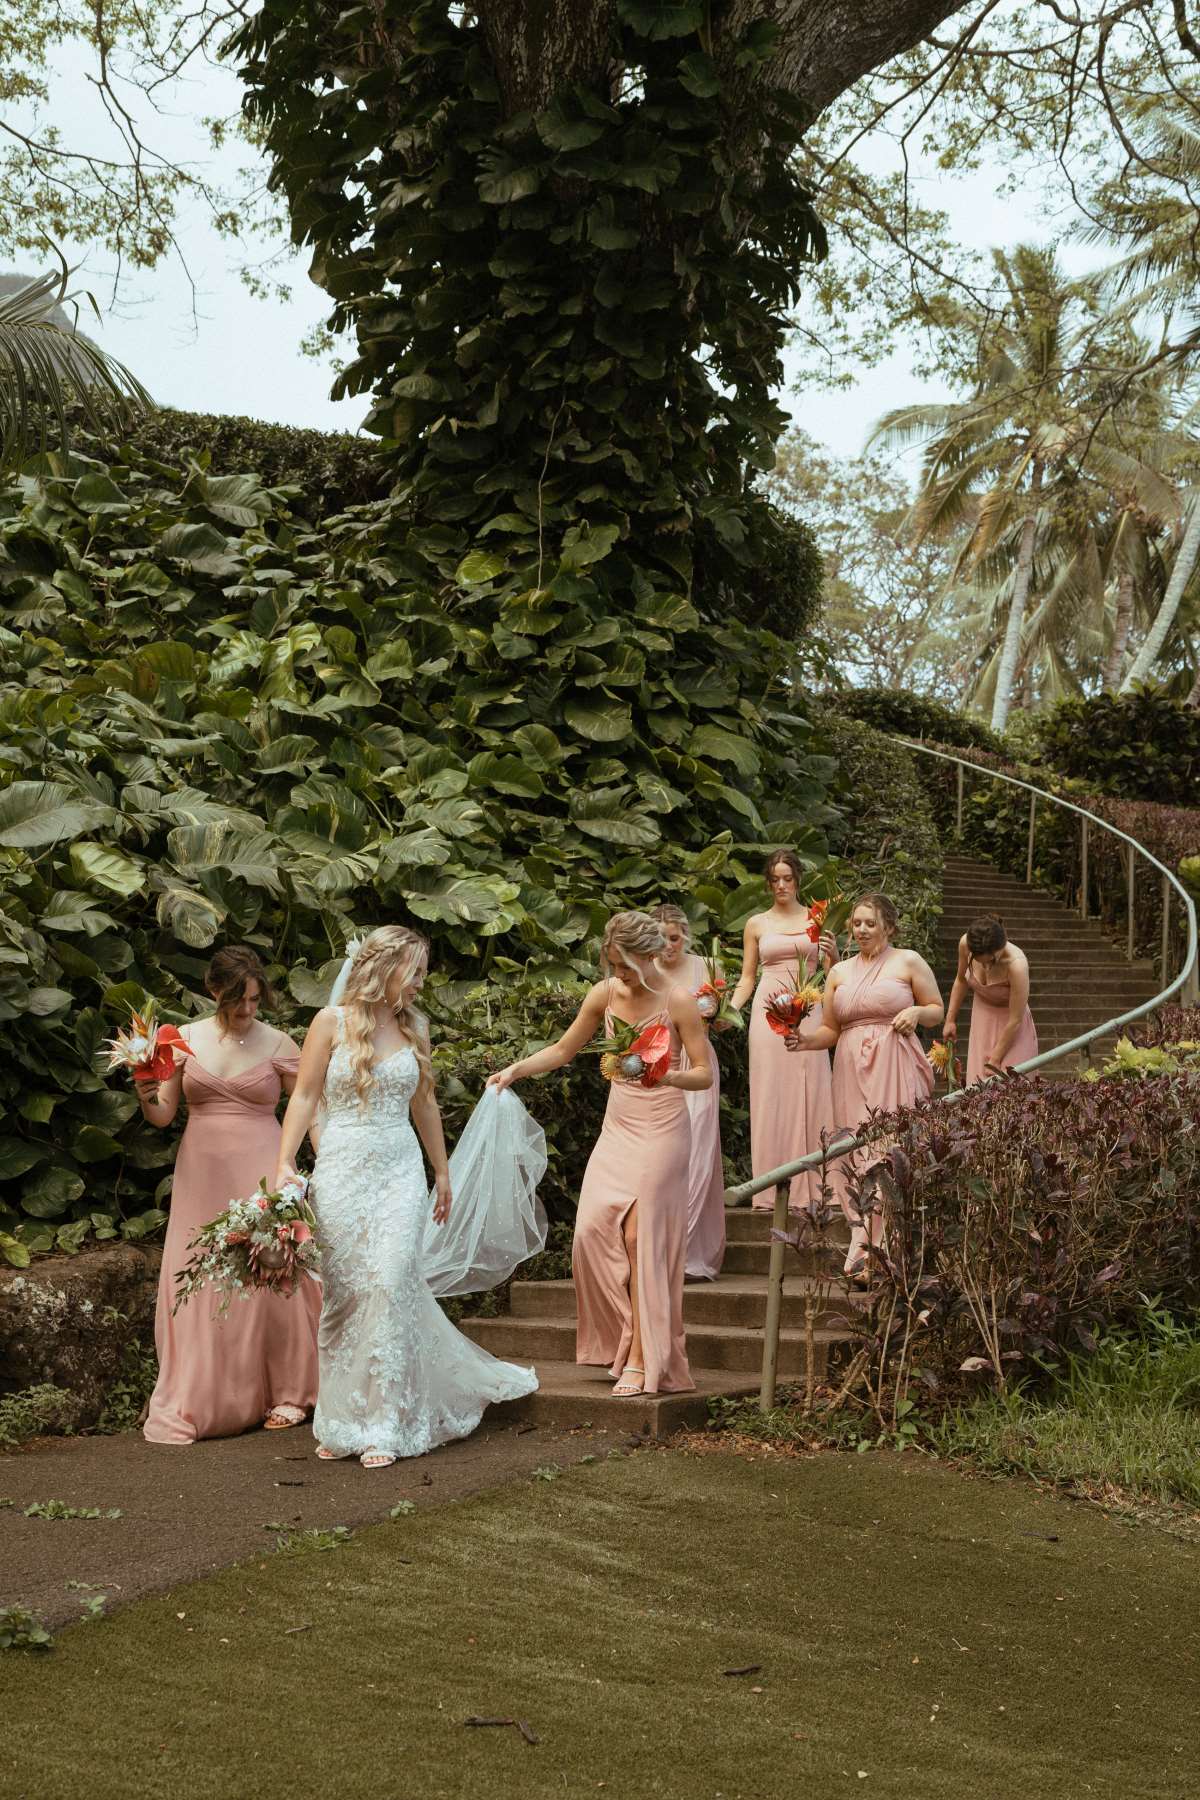 Bridesmaids helping bride with dress at Moili'i Gardens at Kualoa Ranch.